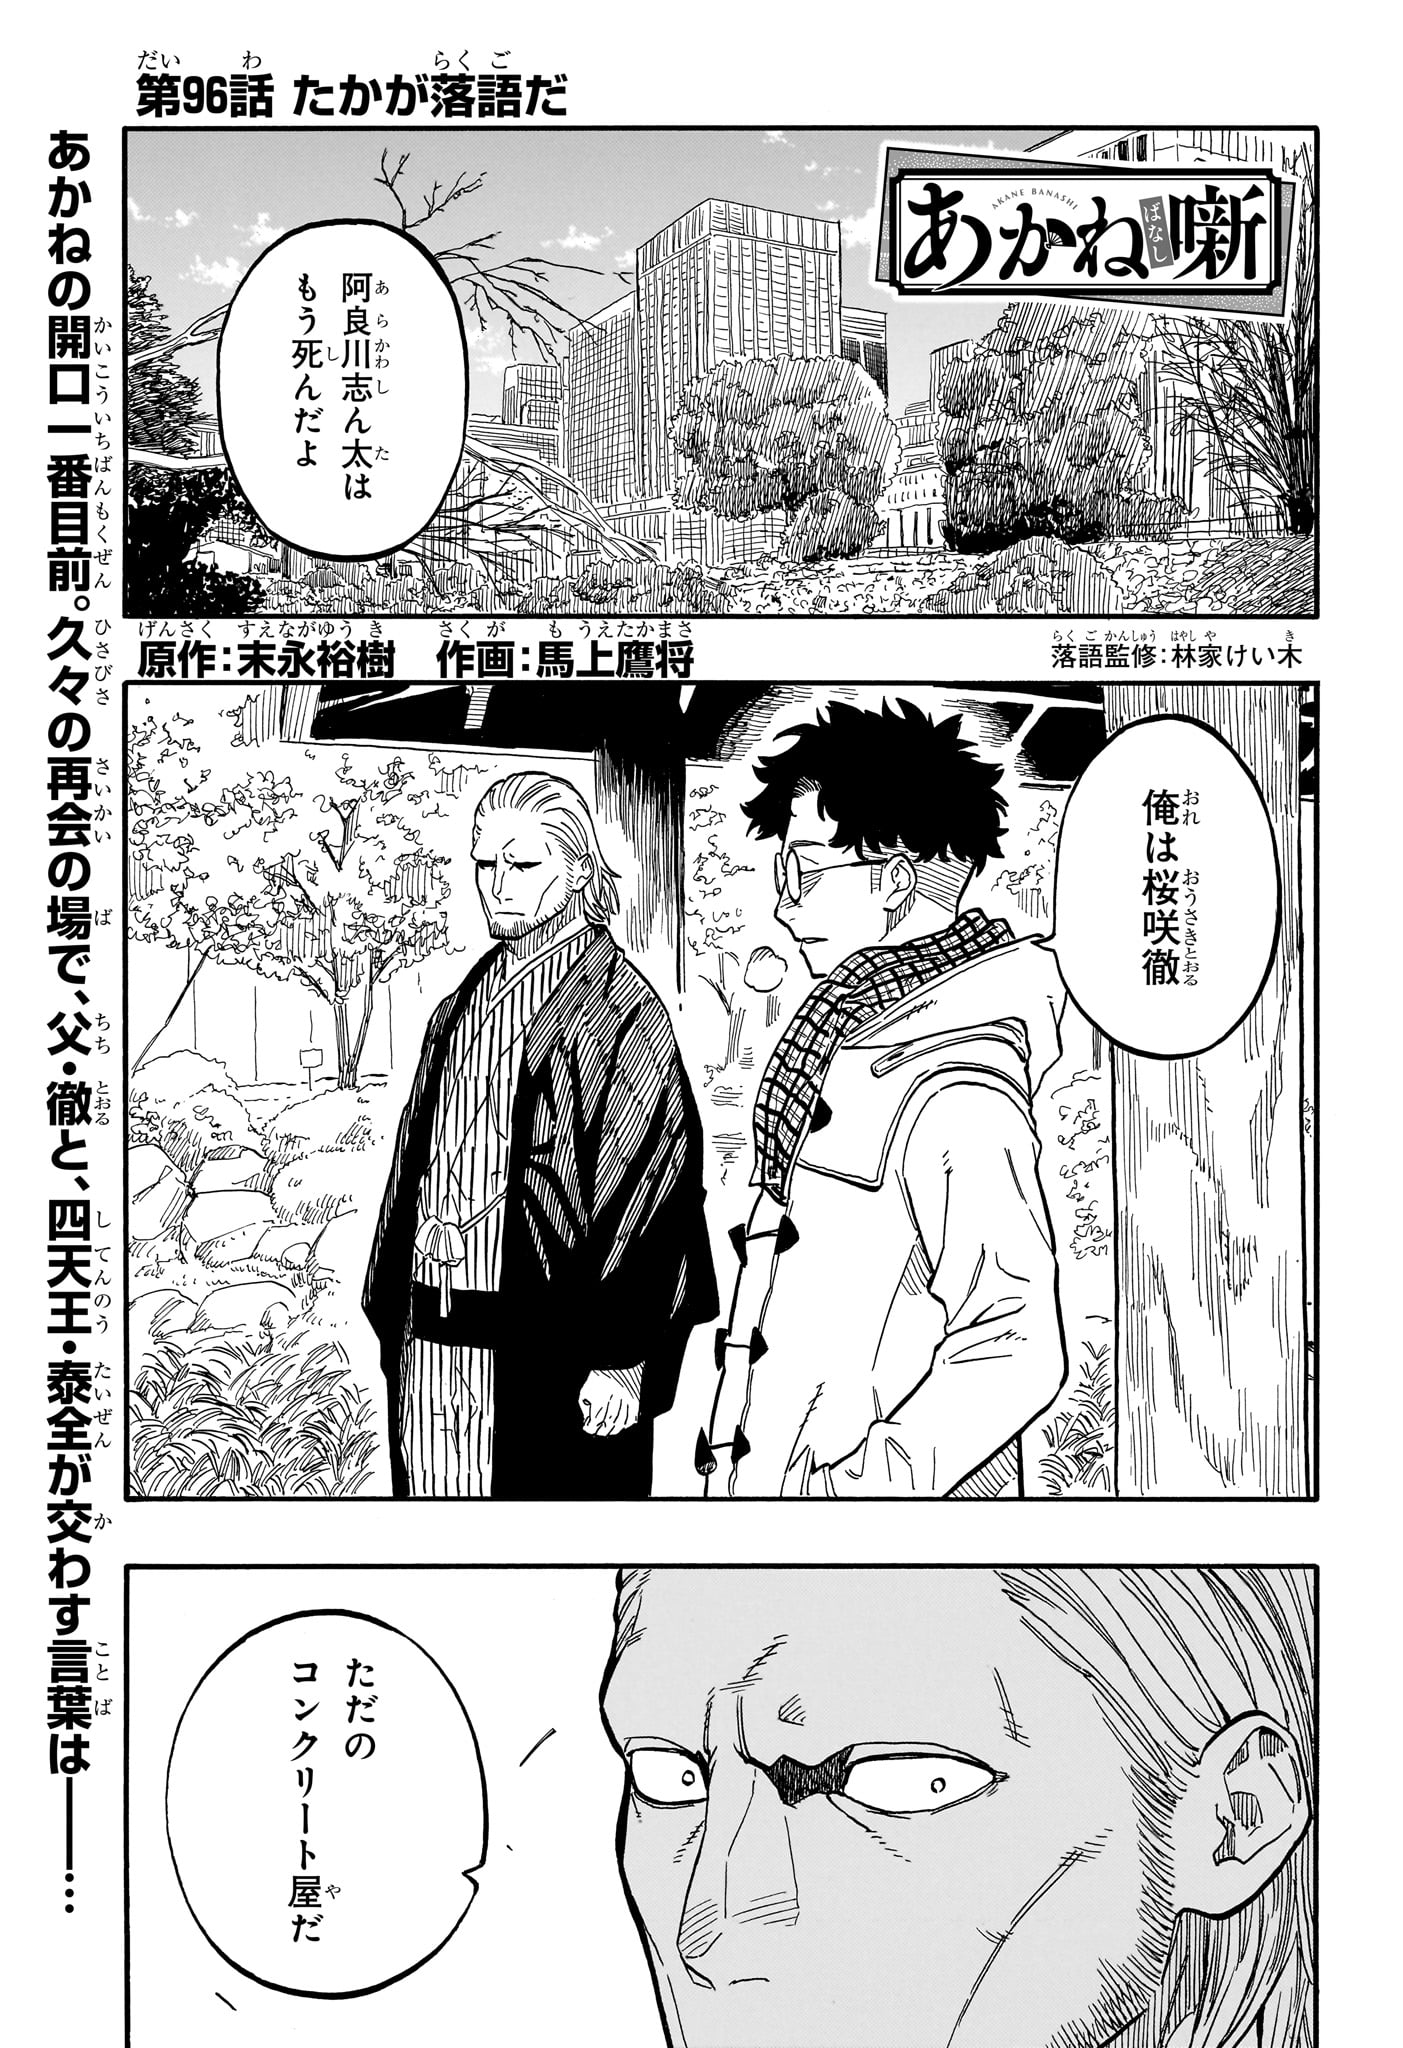 Akane-Banashi - Chapter 96 - Page 1